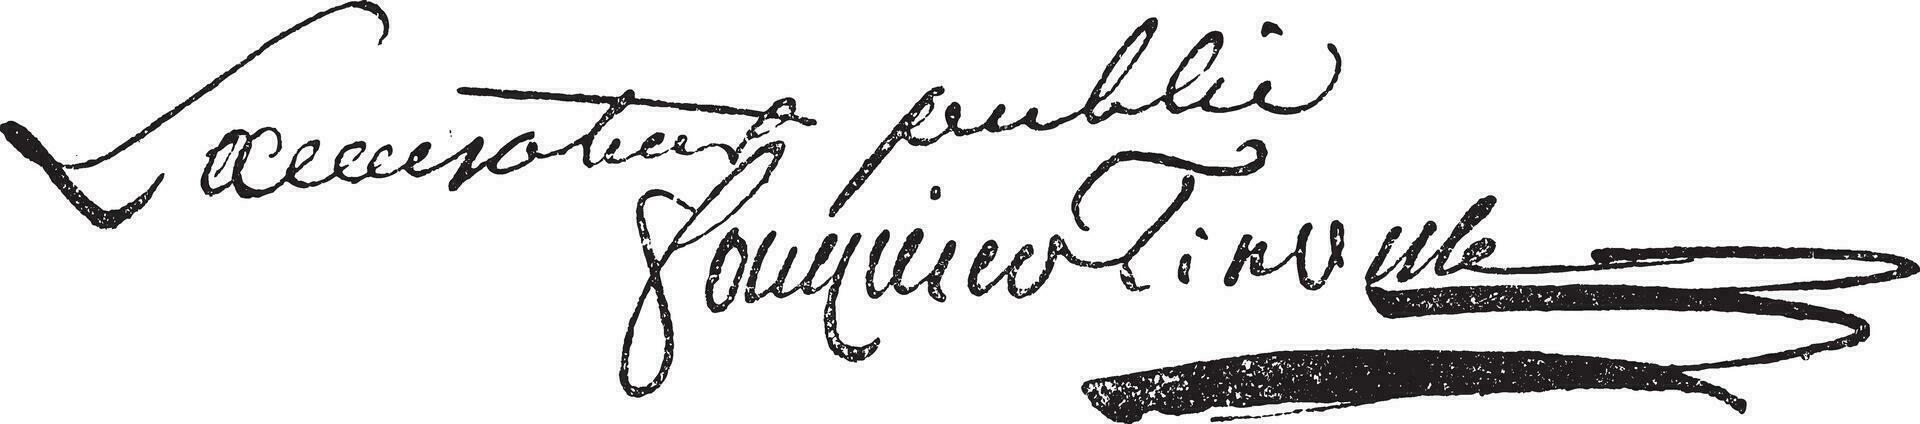 handtekening van antoine quentin fouquier de tinville 1747-1795, wijnoogst gravure. vector